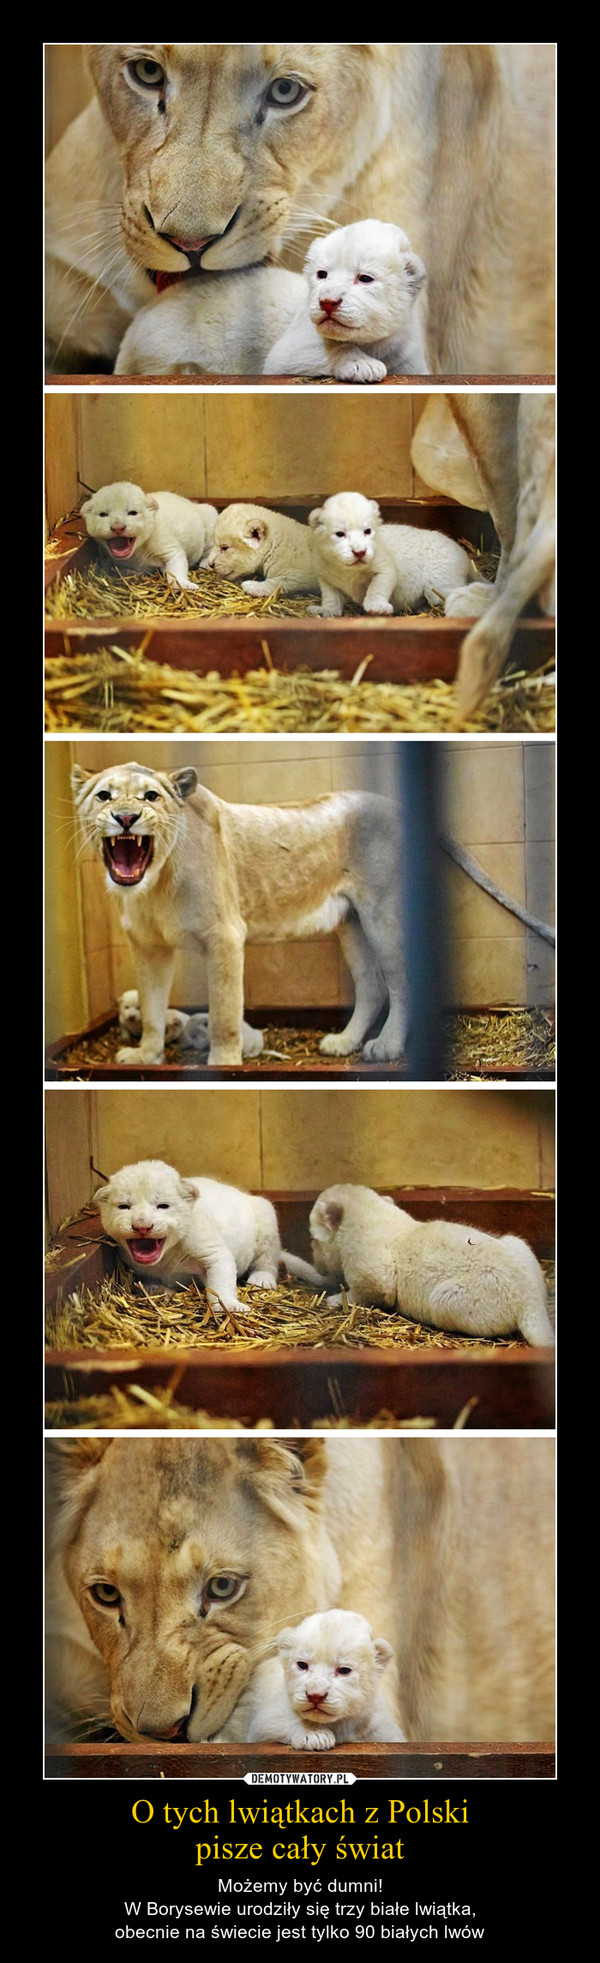 O tych lwiątkach z Polskipisze cały świat – Możemy być dumni!W Borysewie urodziły się trzy białe lwiątka,obecnie na świecie jest tylko 90 białych lwów 